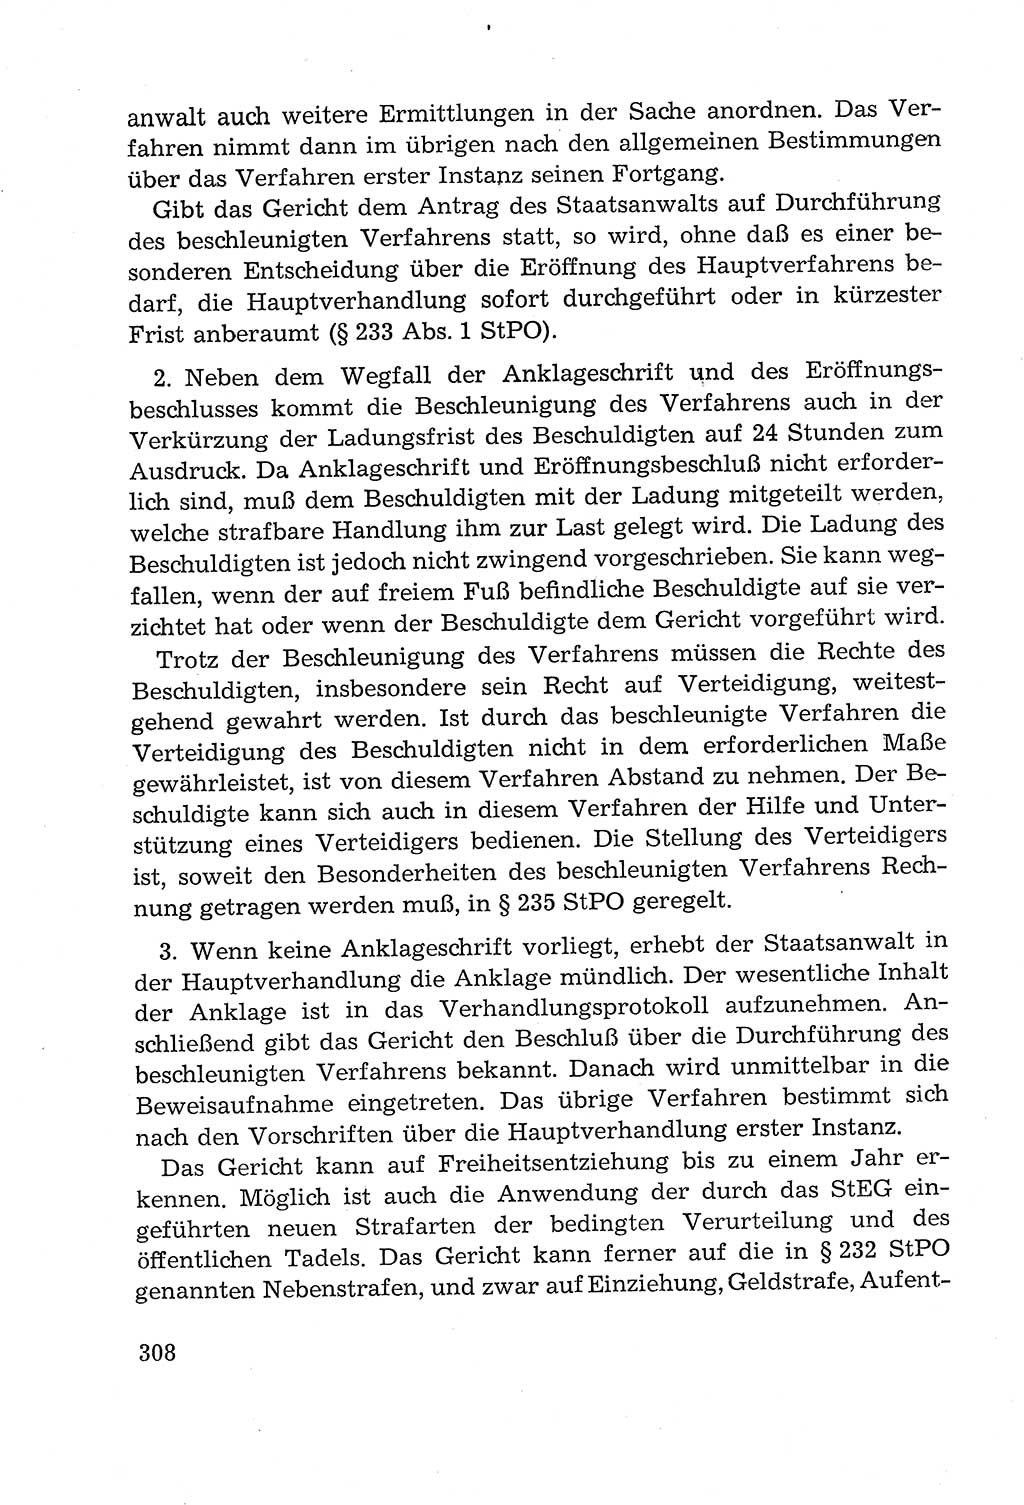 Leitfaden des Strafprozeßrechts der Deutschen Demokratischen Republik (DDR) 1959, Seite 308 (LF StPR DDR 1959, S. 308)